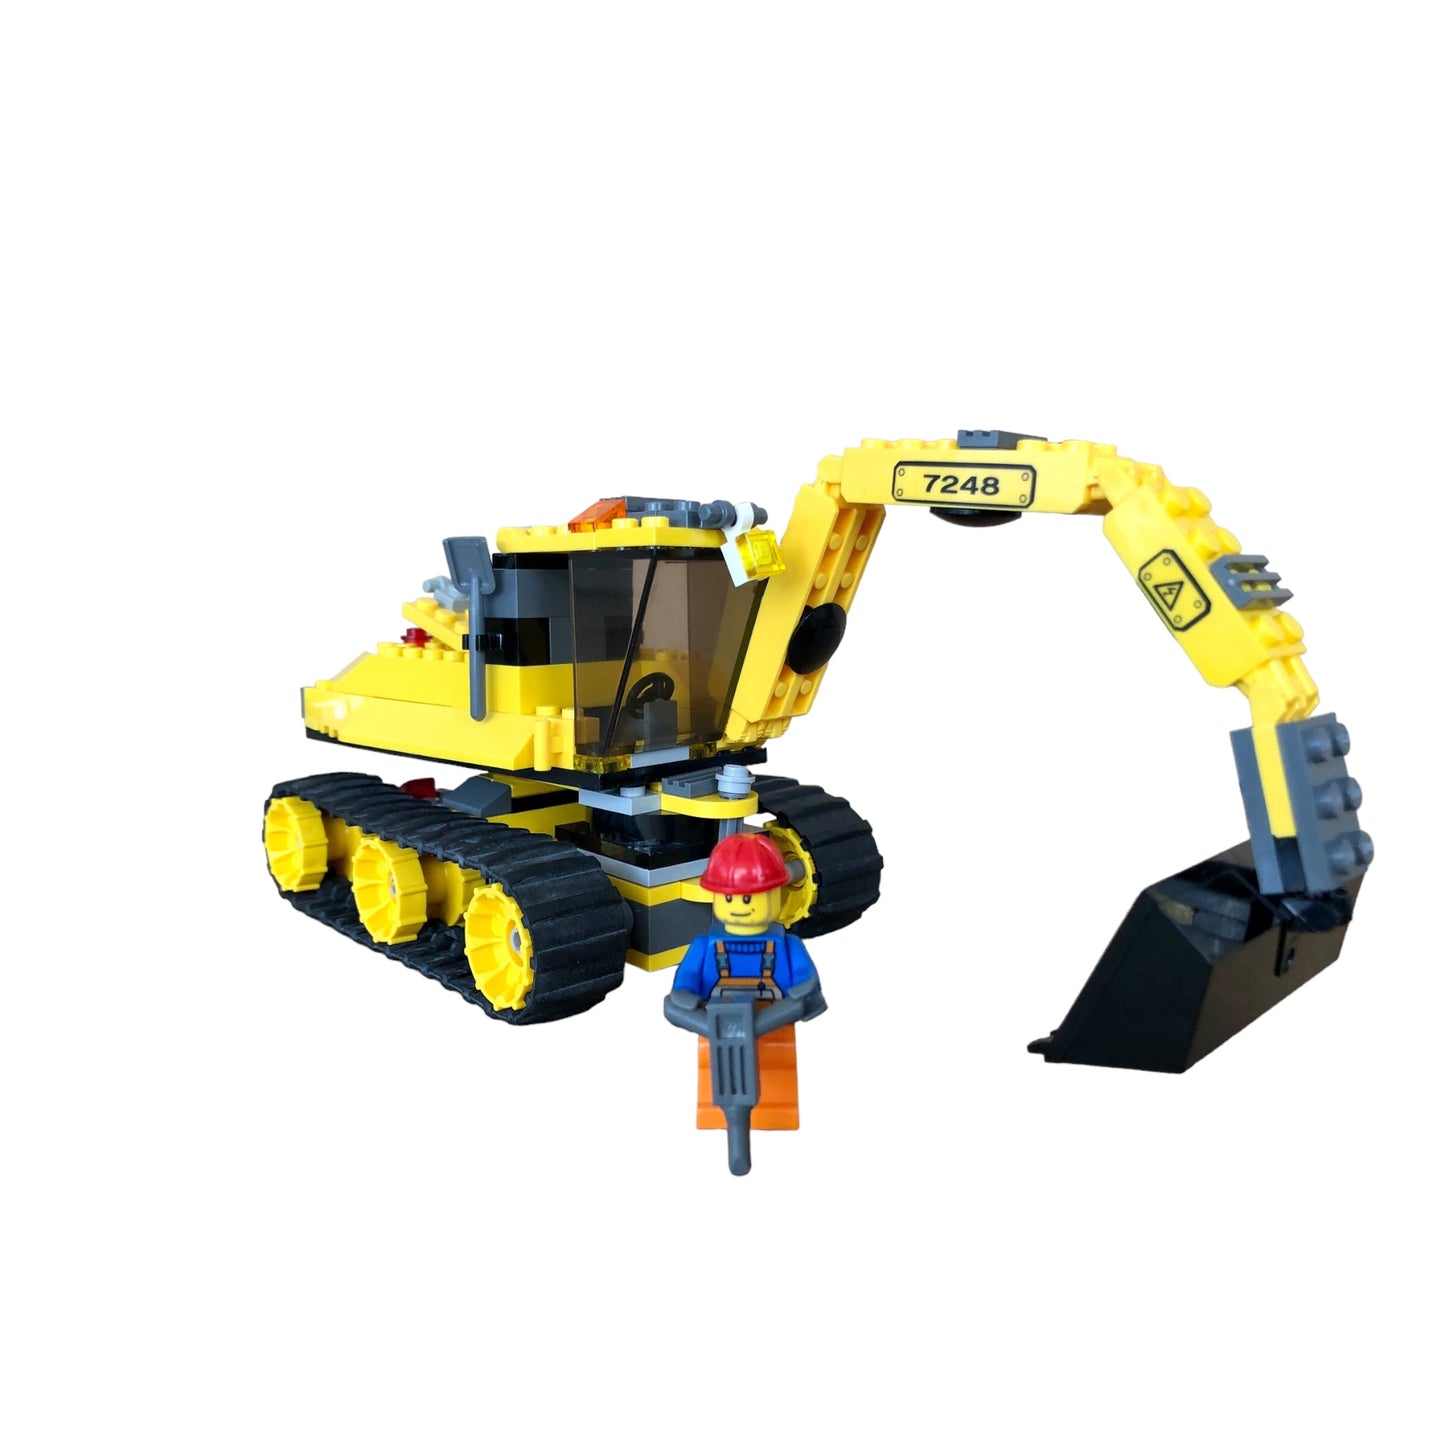 LEGO ® City 7248 - Digger Set